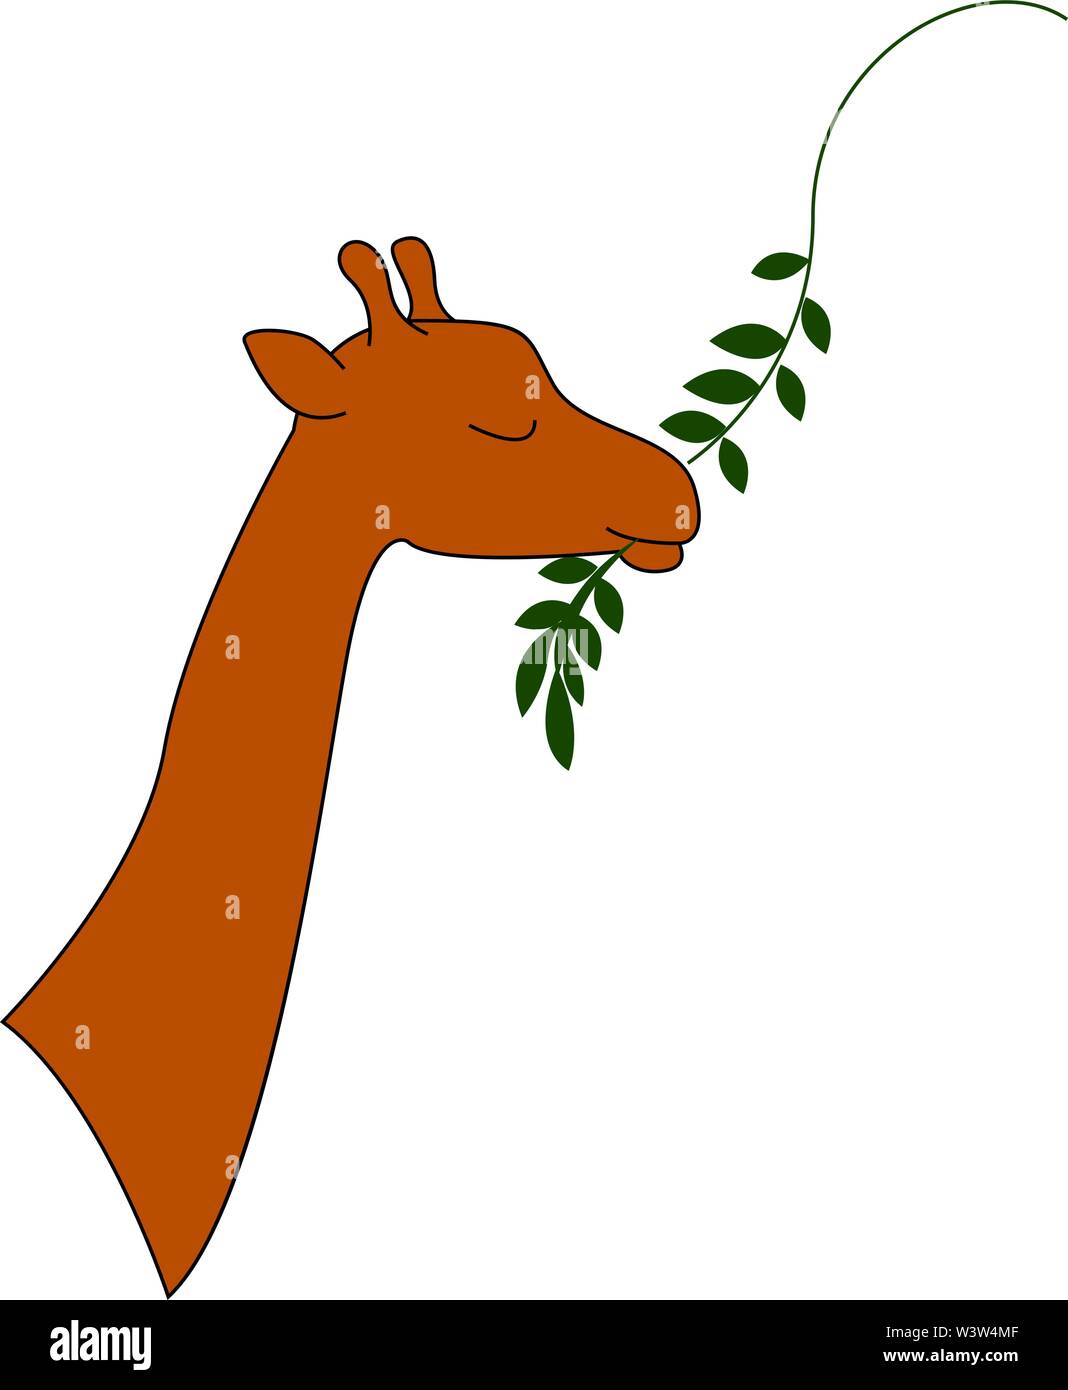 Giraffe eatting, illustration, vector on white background. Stock Vector